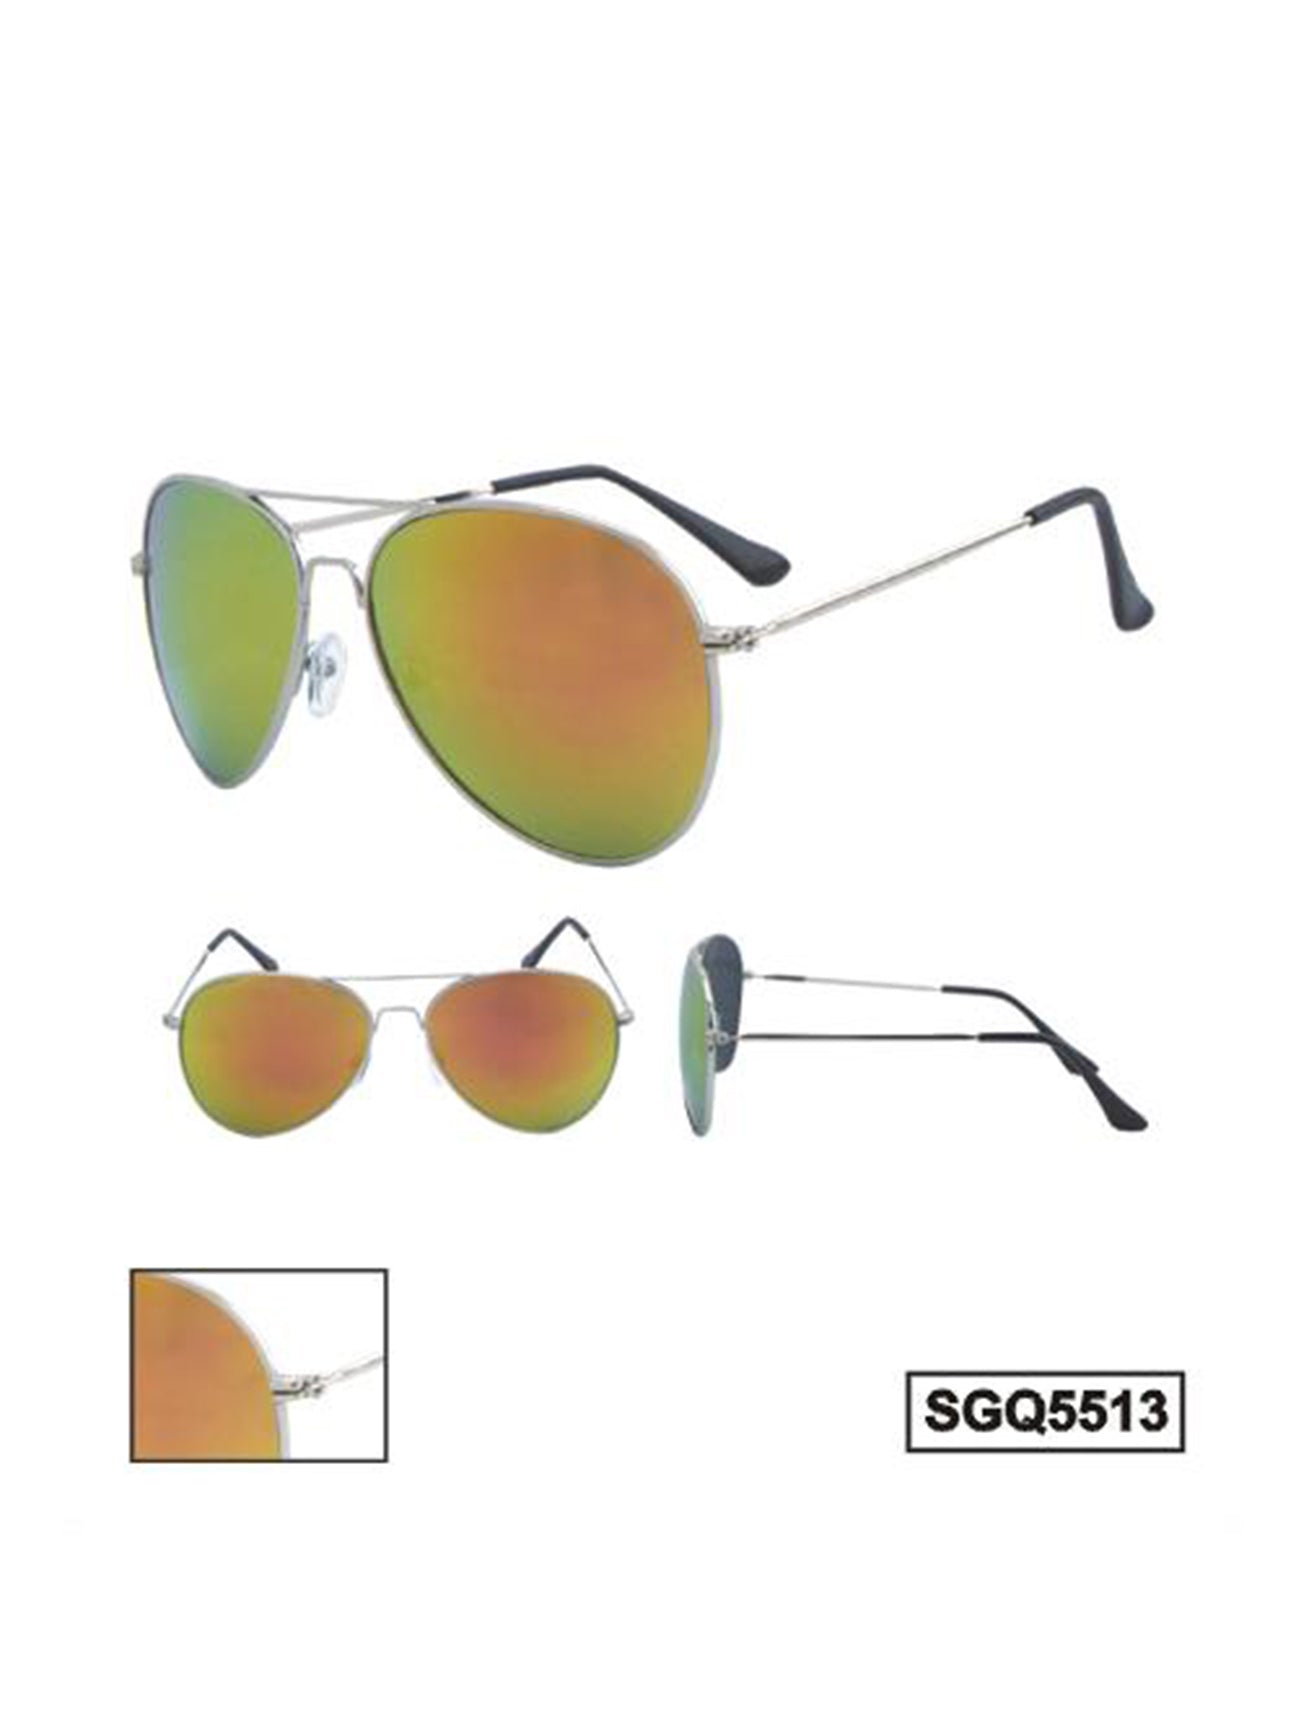 Silver Frame Aviator Sunglasses with Gold Revo Lens